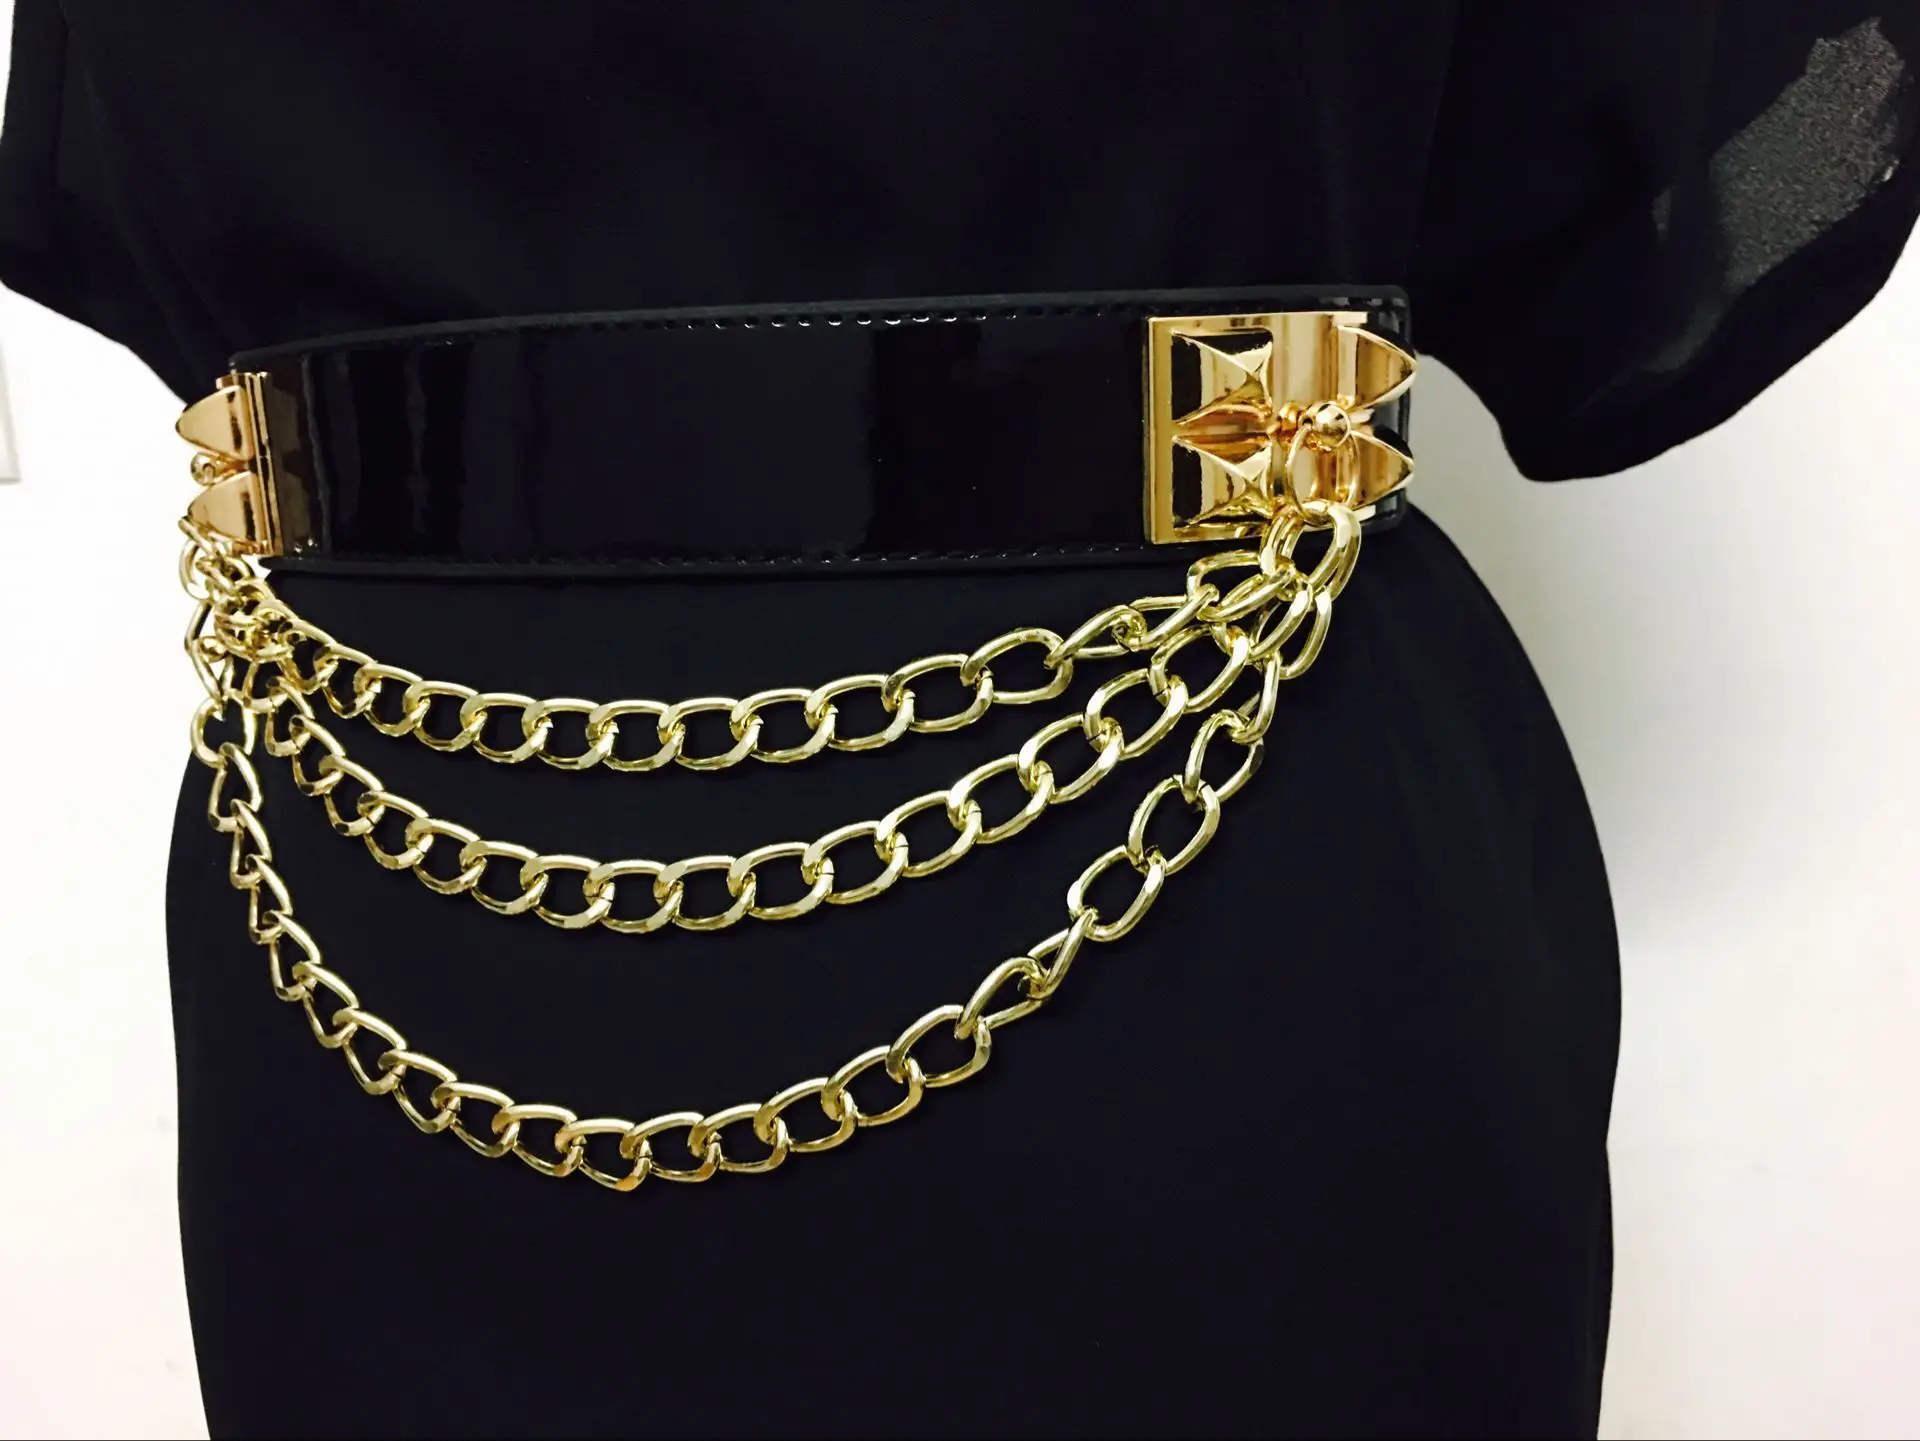 Elastic Punk Dress Belt For Women Rivet Metal Gold Chain Waistband ...